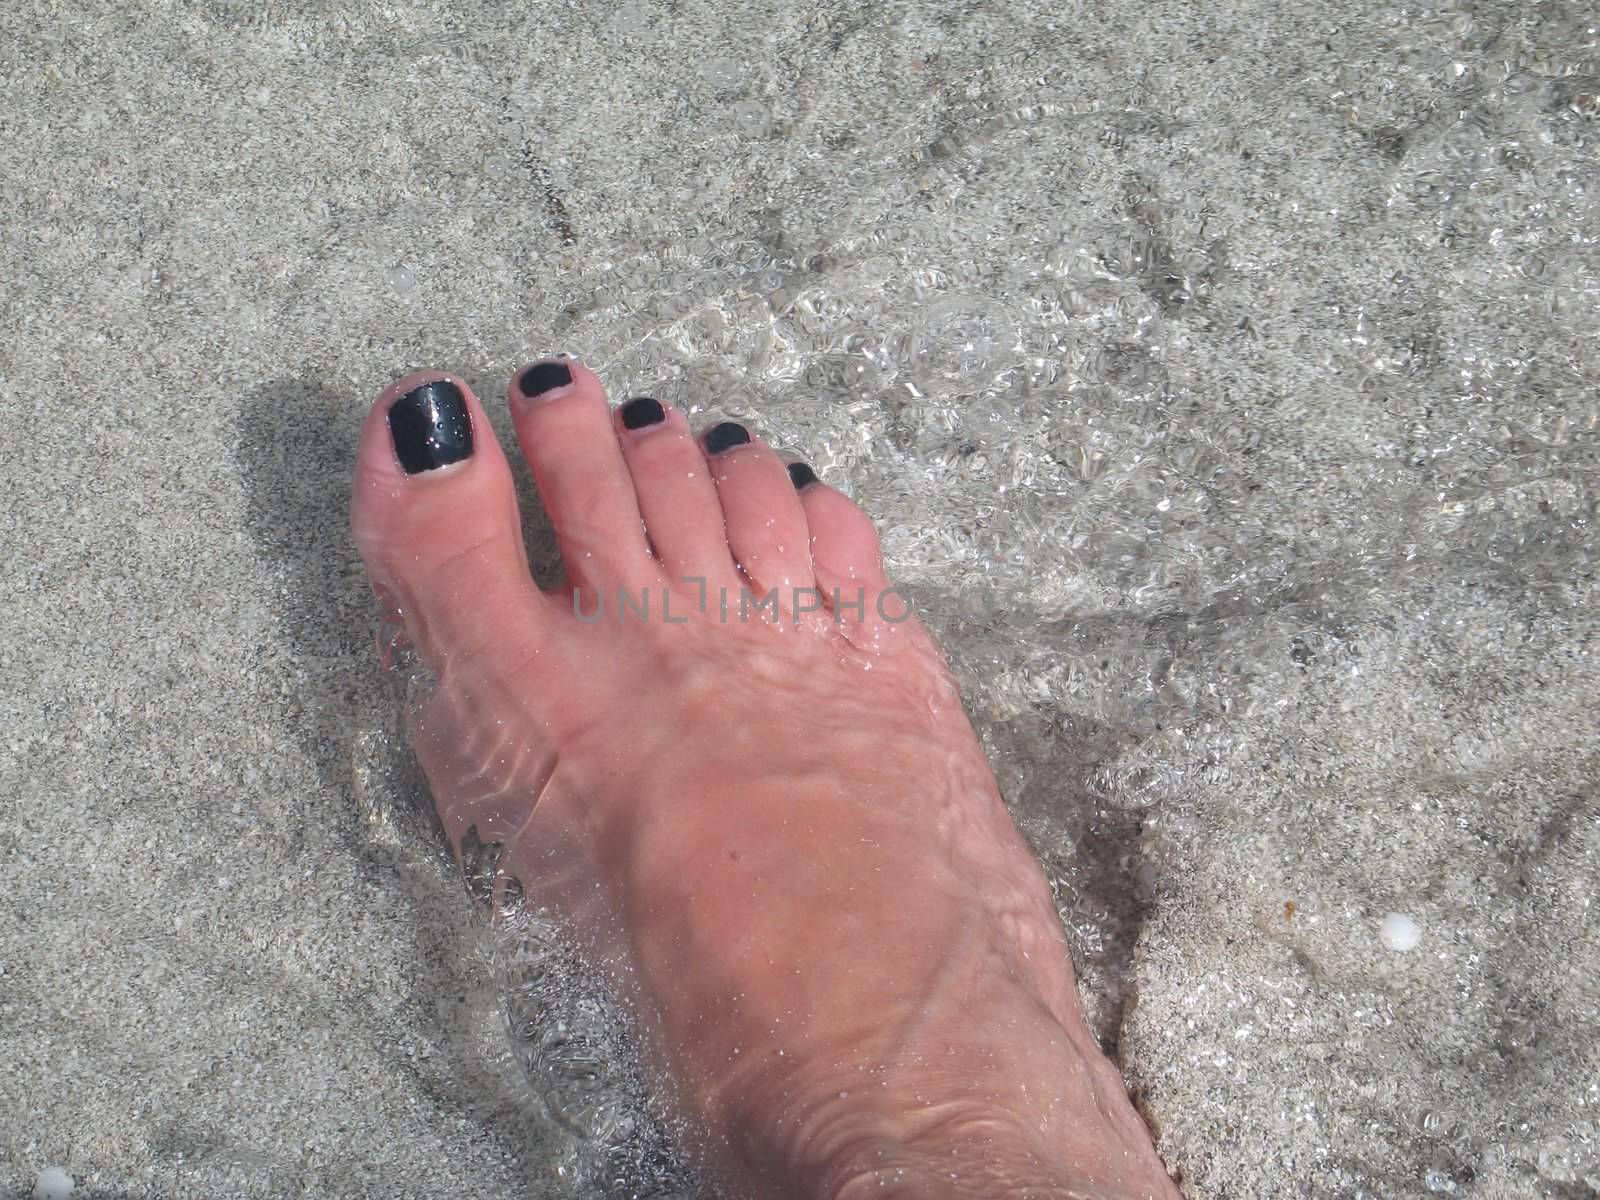 female's feet in the ocean by mmm